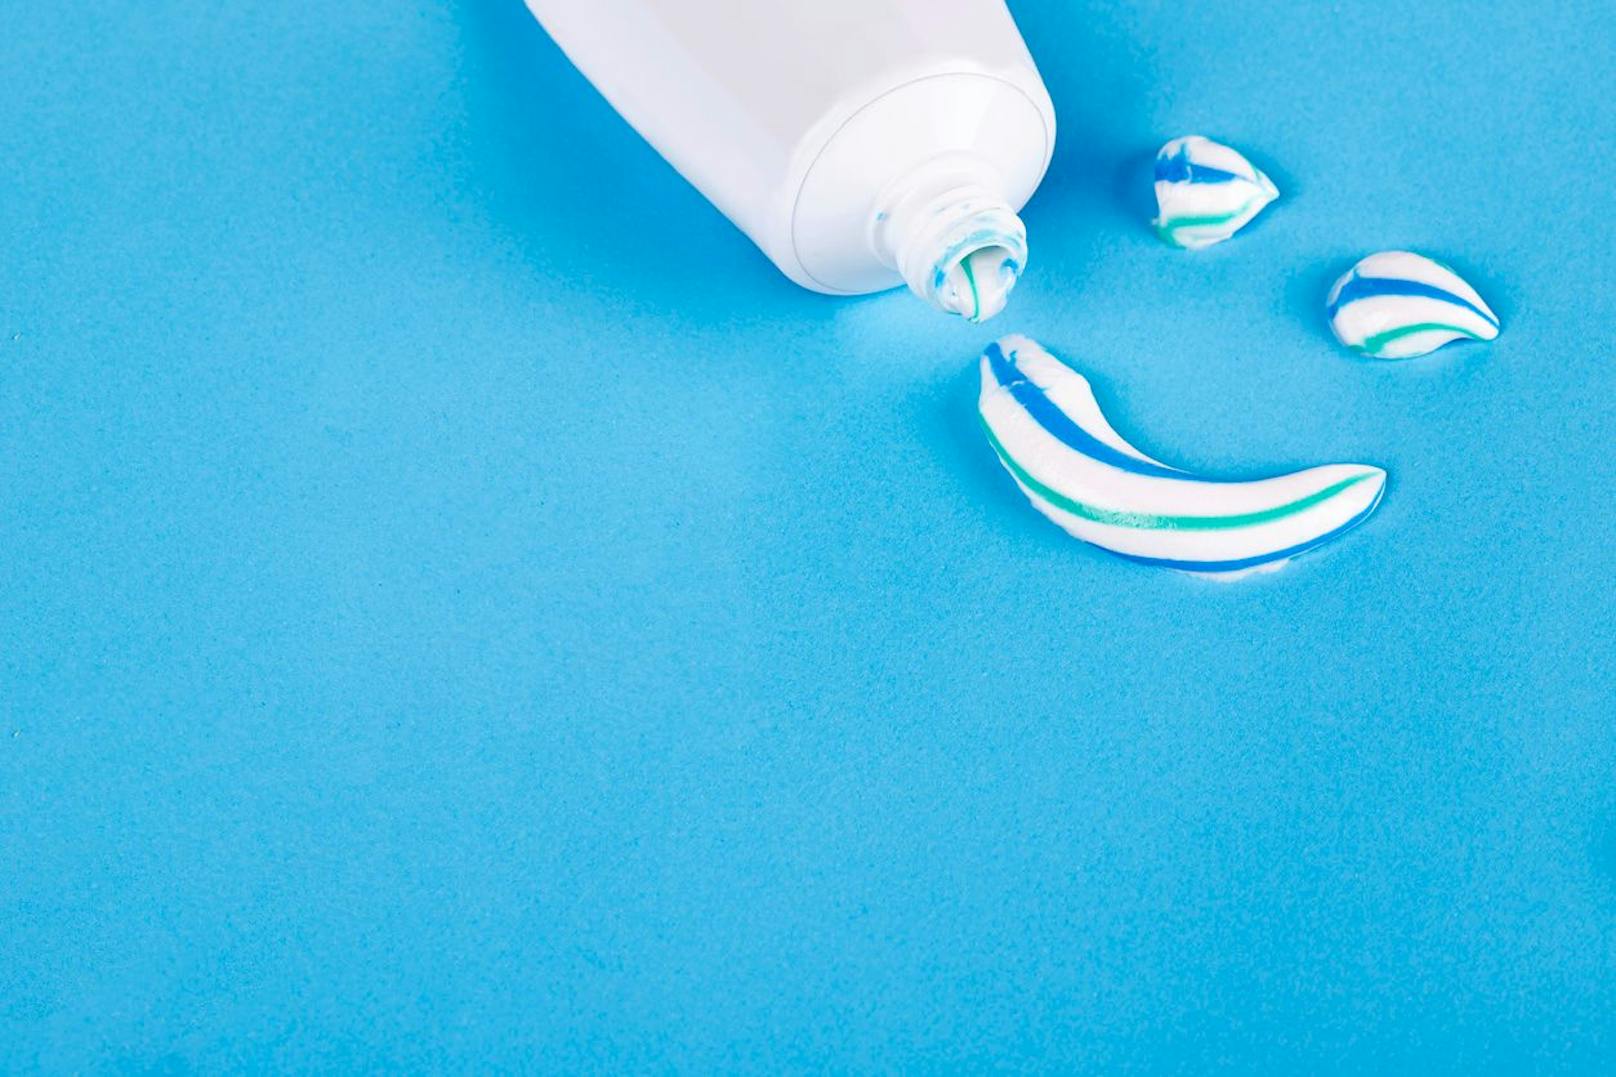 Gib eine kleine Menge Zahnpasta auf deine Nägel und lasse das Produkt für etwa 10 Minuten einwirken.